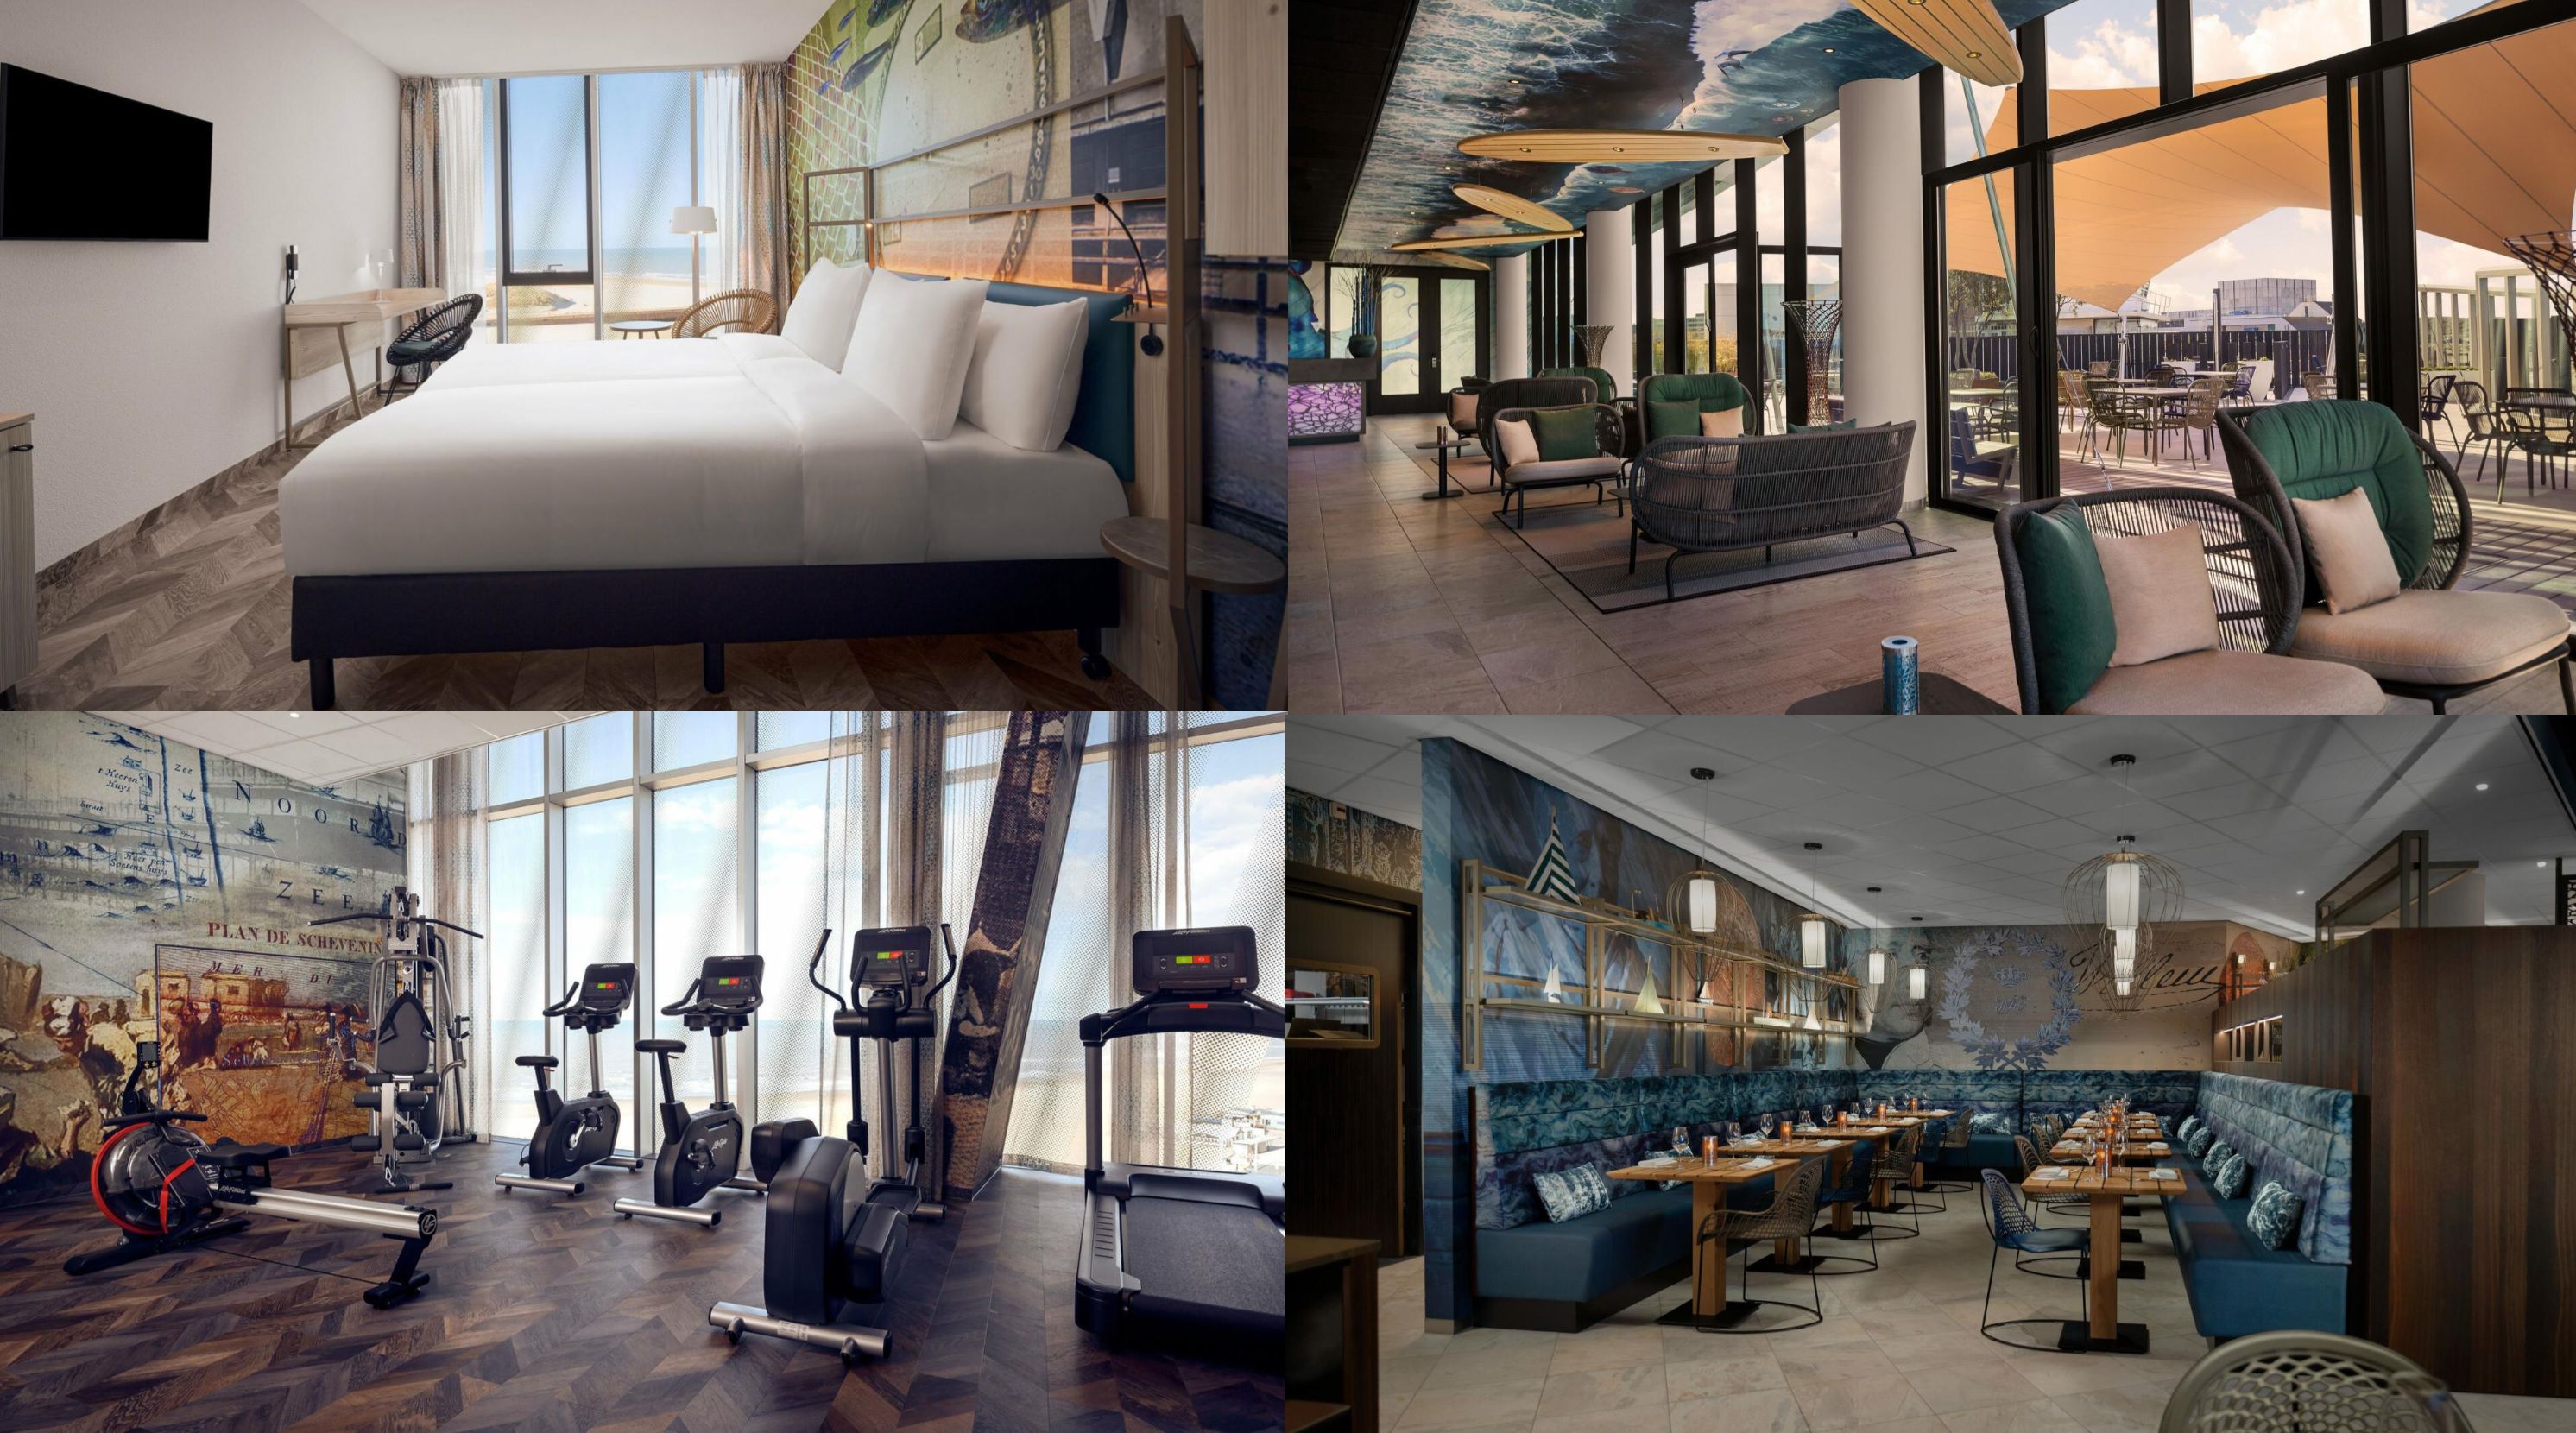 ÜN im neuen Inntel Hotels Den Haag Marina Beach mit Frühstück + Wellness und Welcomedrink ab 65€